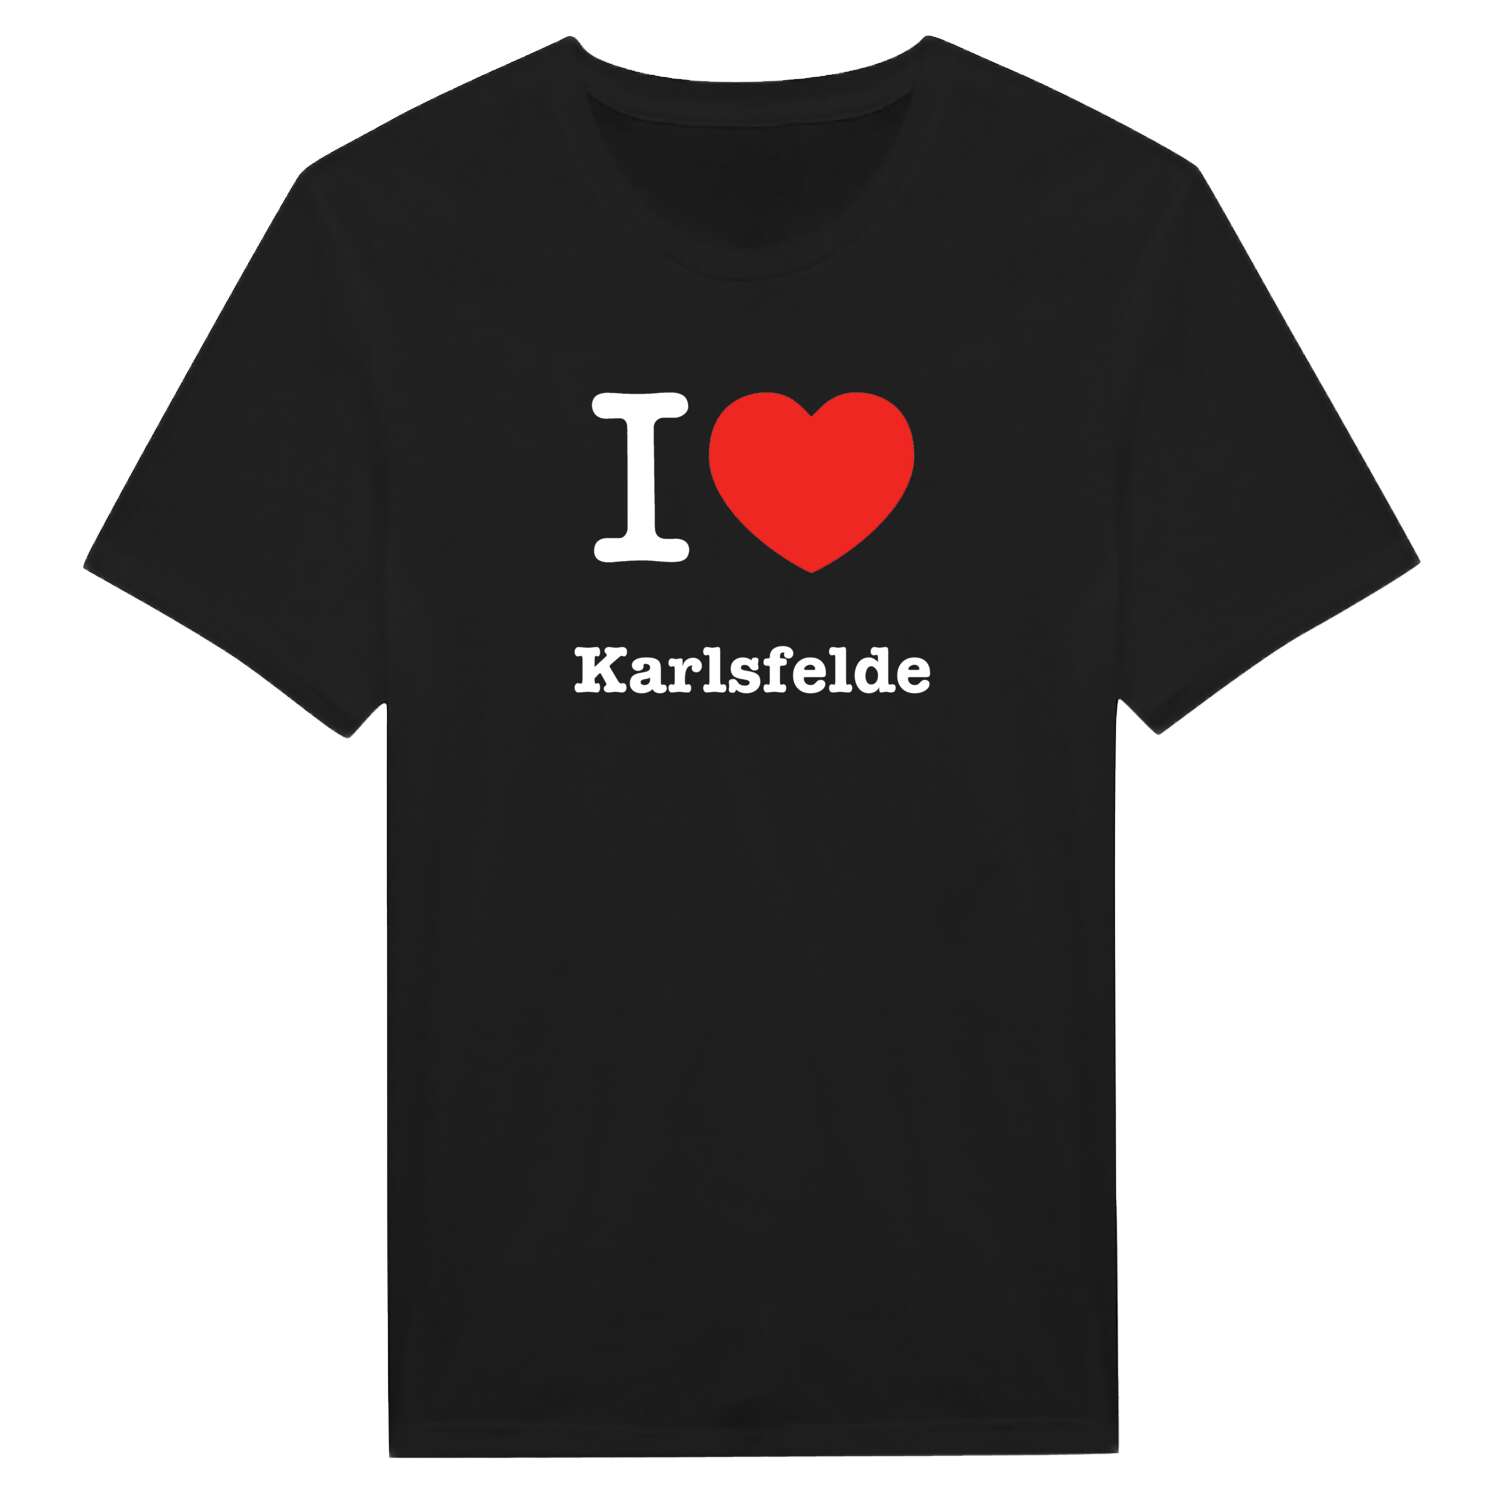 Karlsfelde T-Shirt »I love«